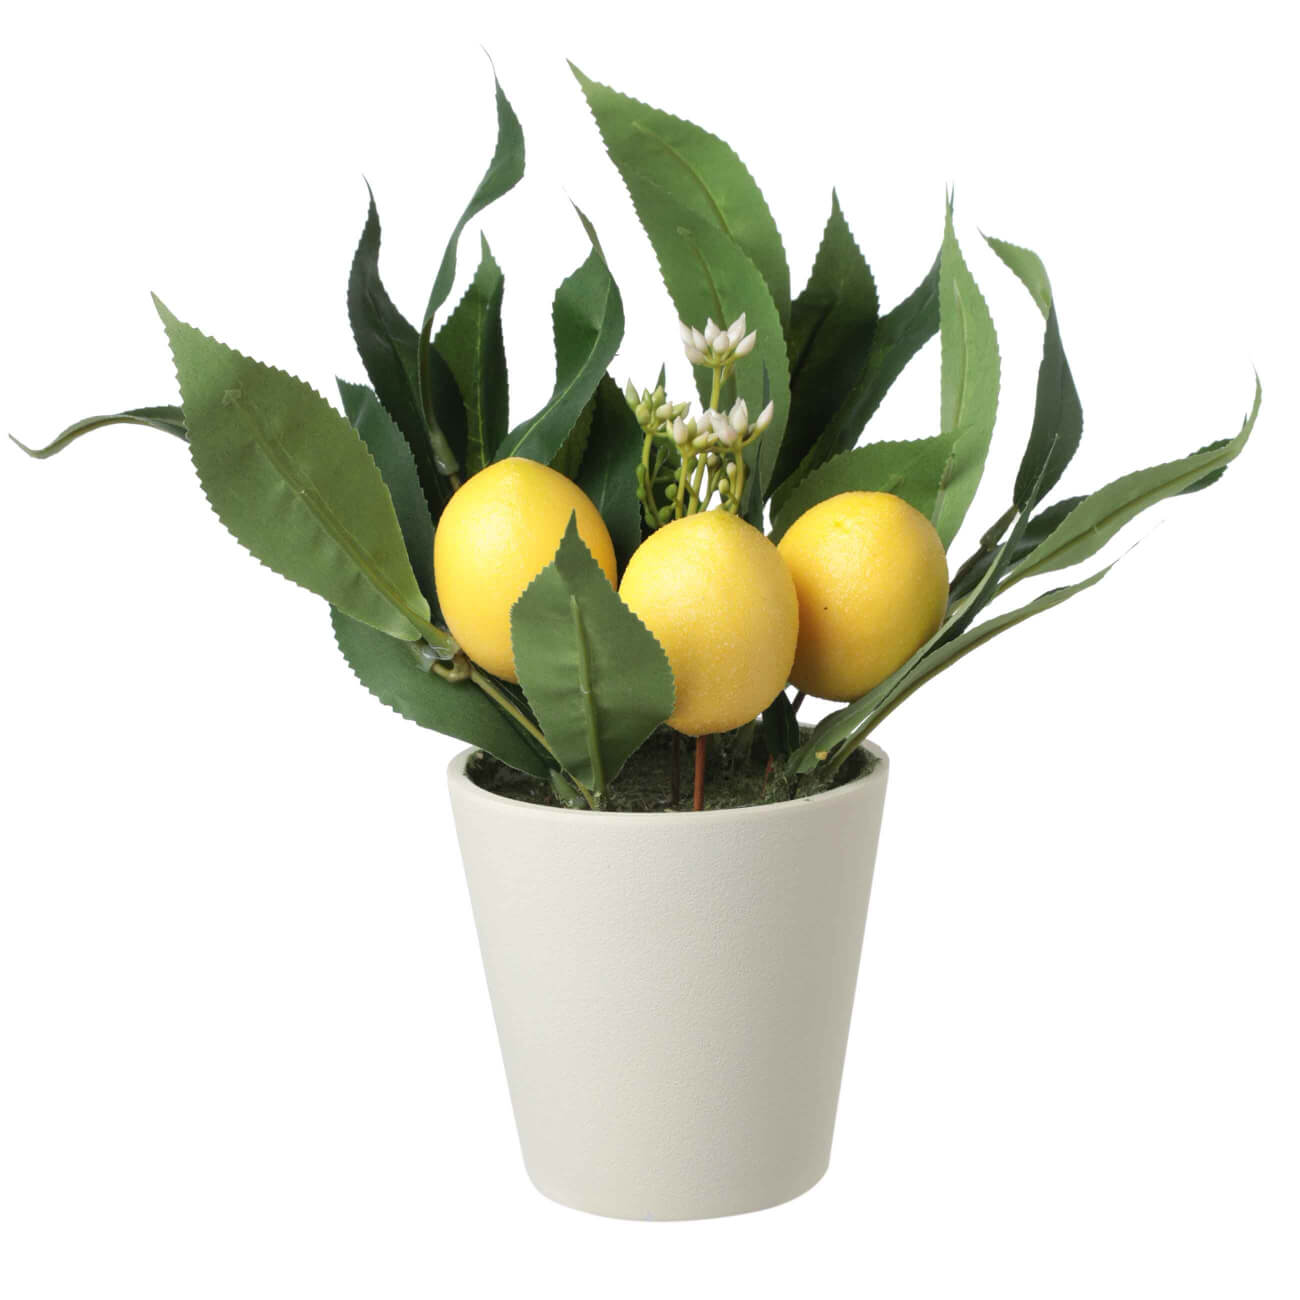 Растение искусственное, 28 см, в горшке, полиэстер/меламин, Лимоны, Pot garden tetra decoart green cabomba 4 xl растение аквариумное